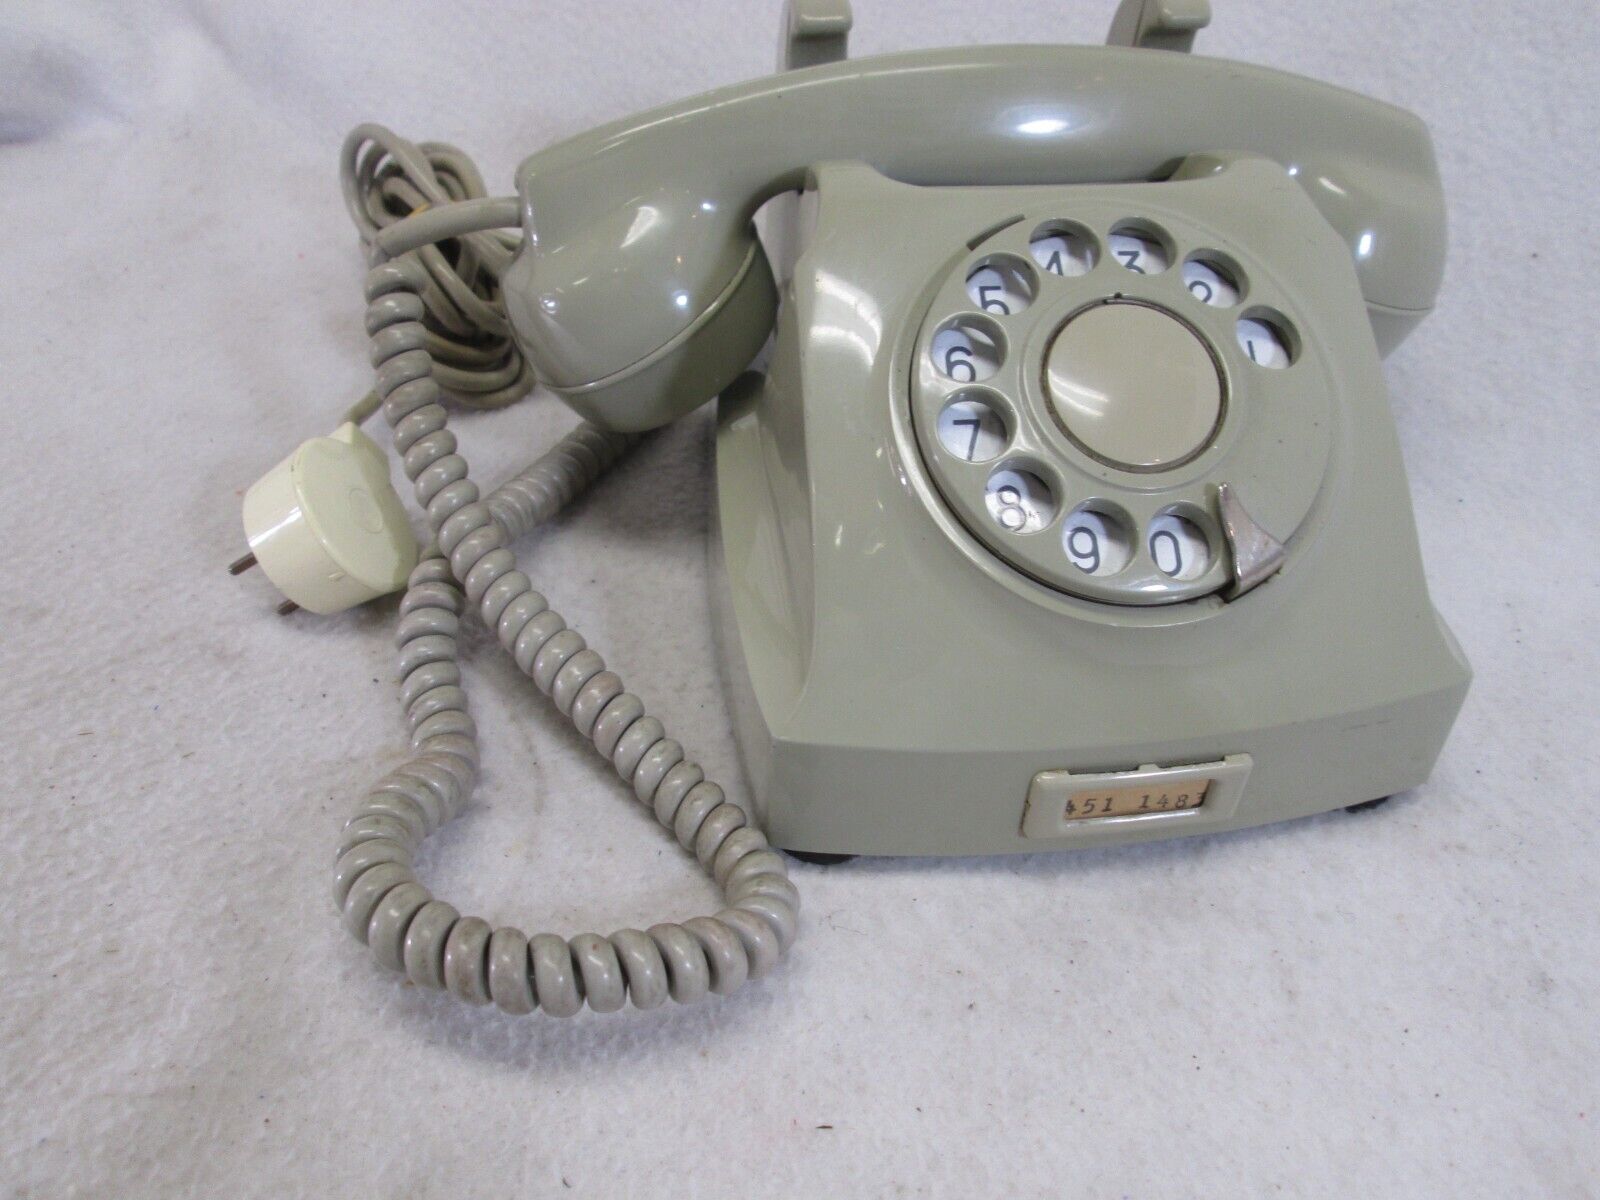 Vintage 1960's Telegrafverket gray rotary dial desk telephone (works)